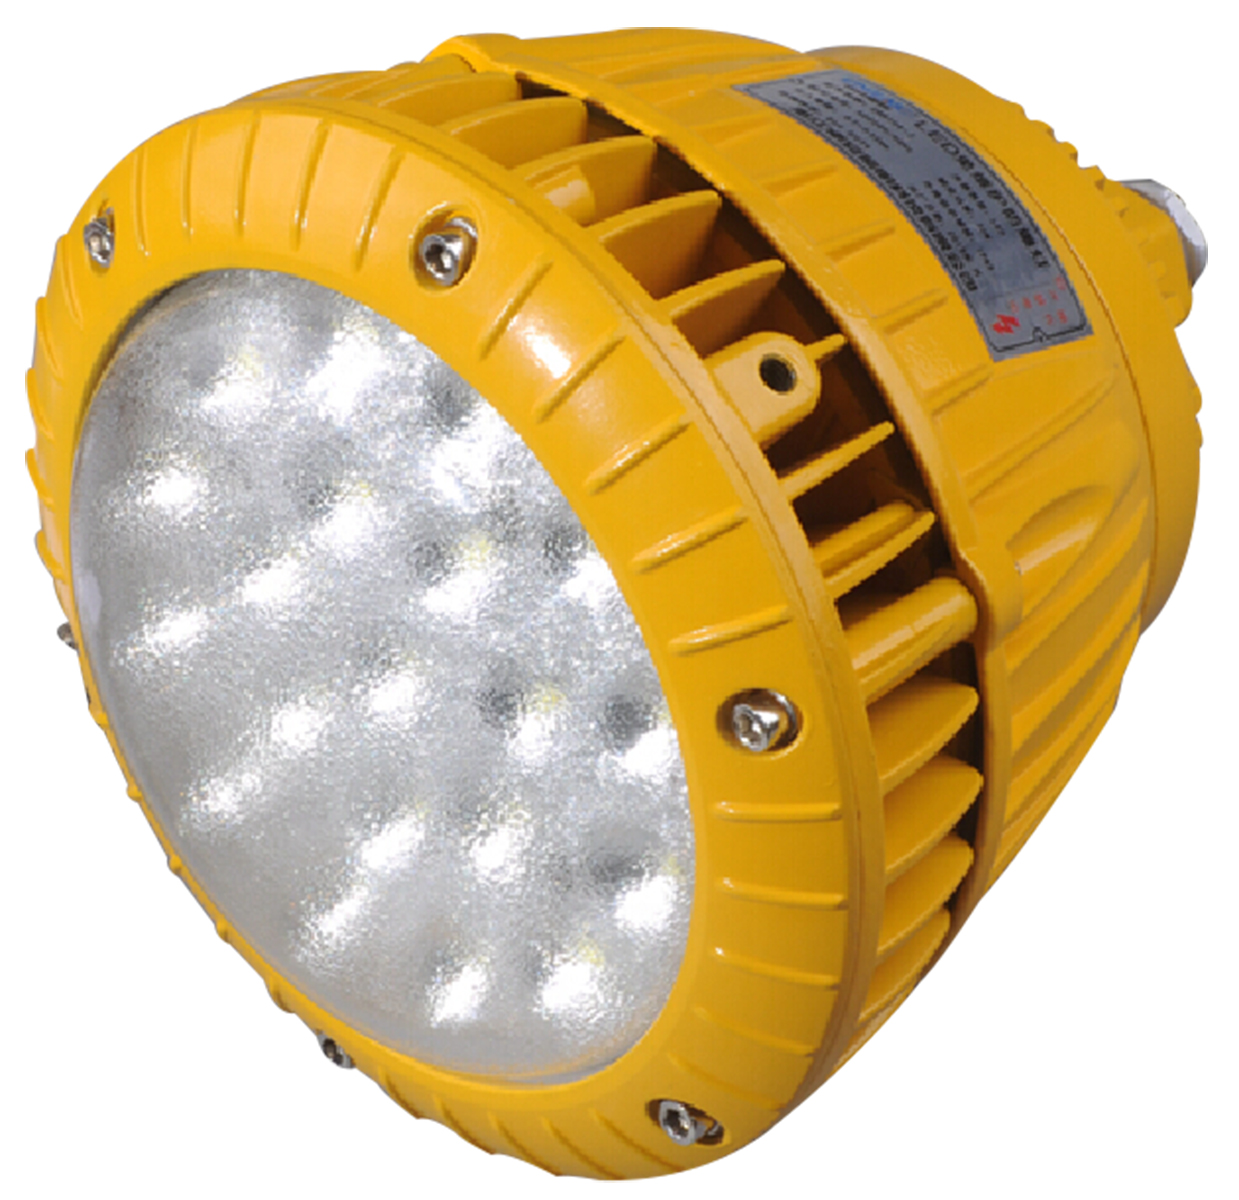 新款LED防爆防眩照明灯 方形40W-70W示例图4